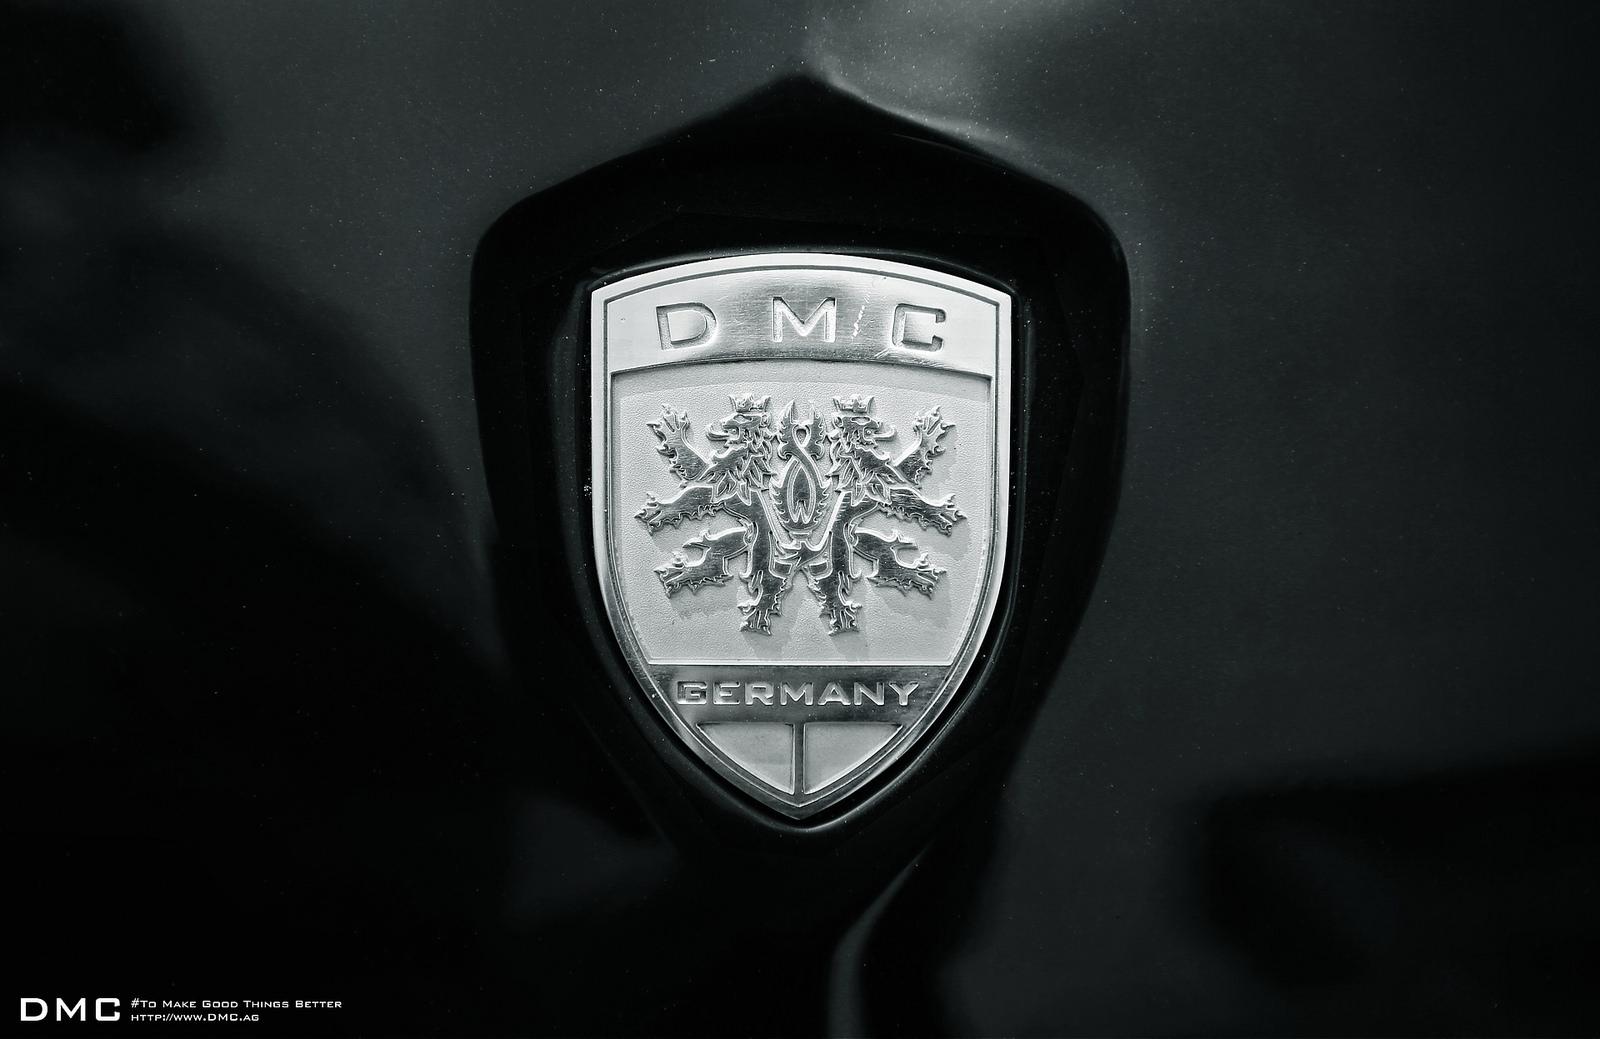 Dmcs 1000 Hp Lamborghini Aventador Goes All Black Autoevolution